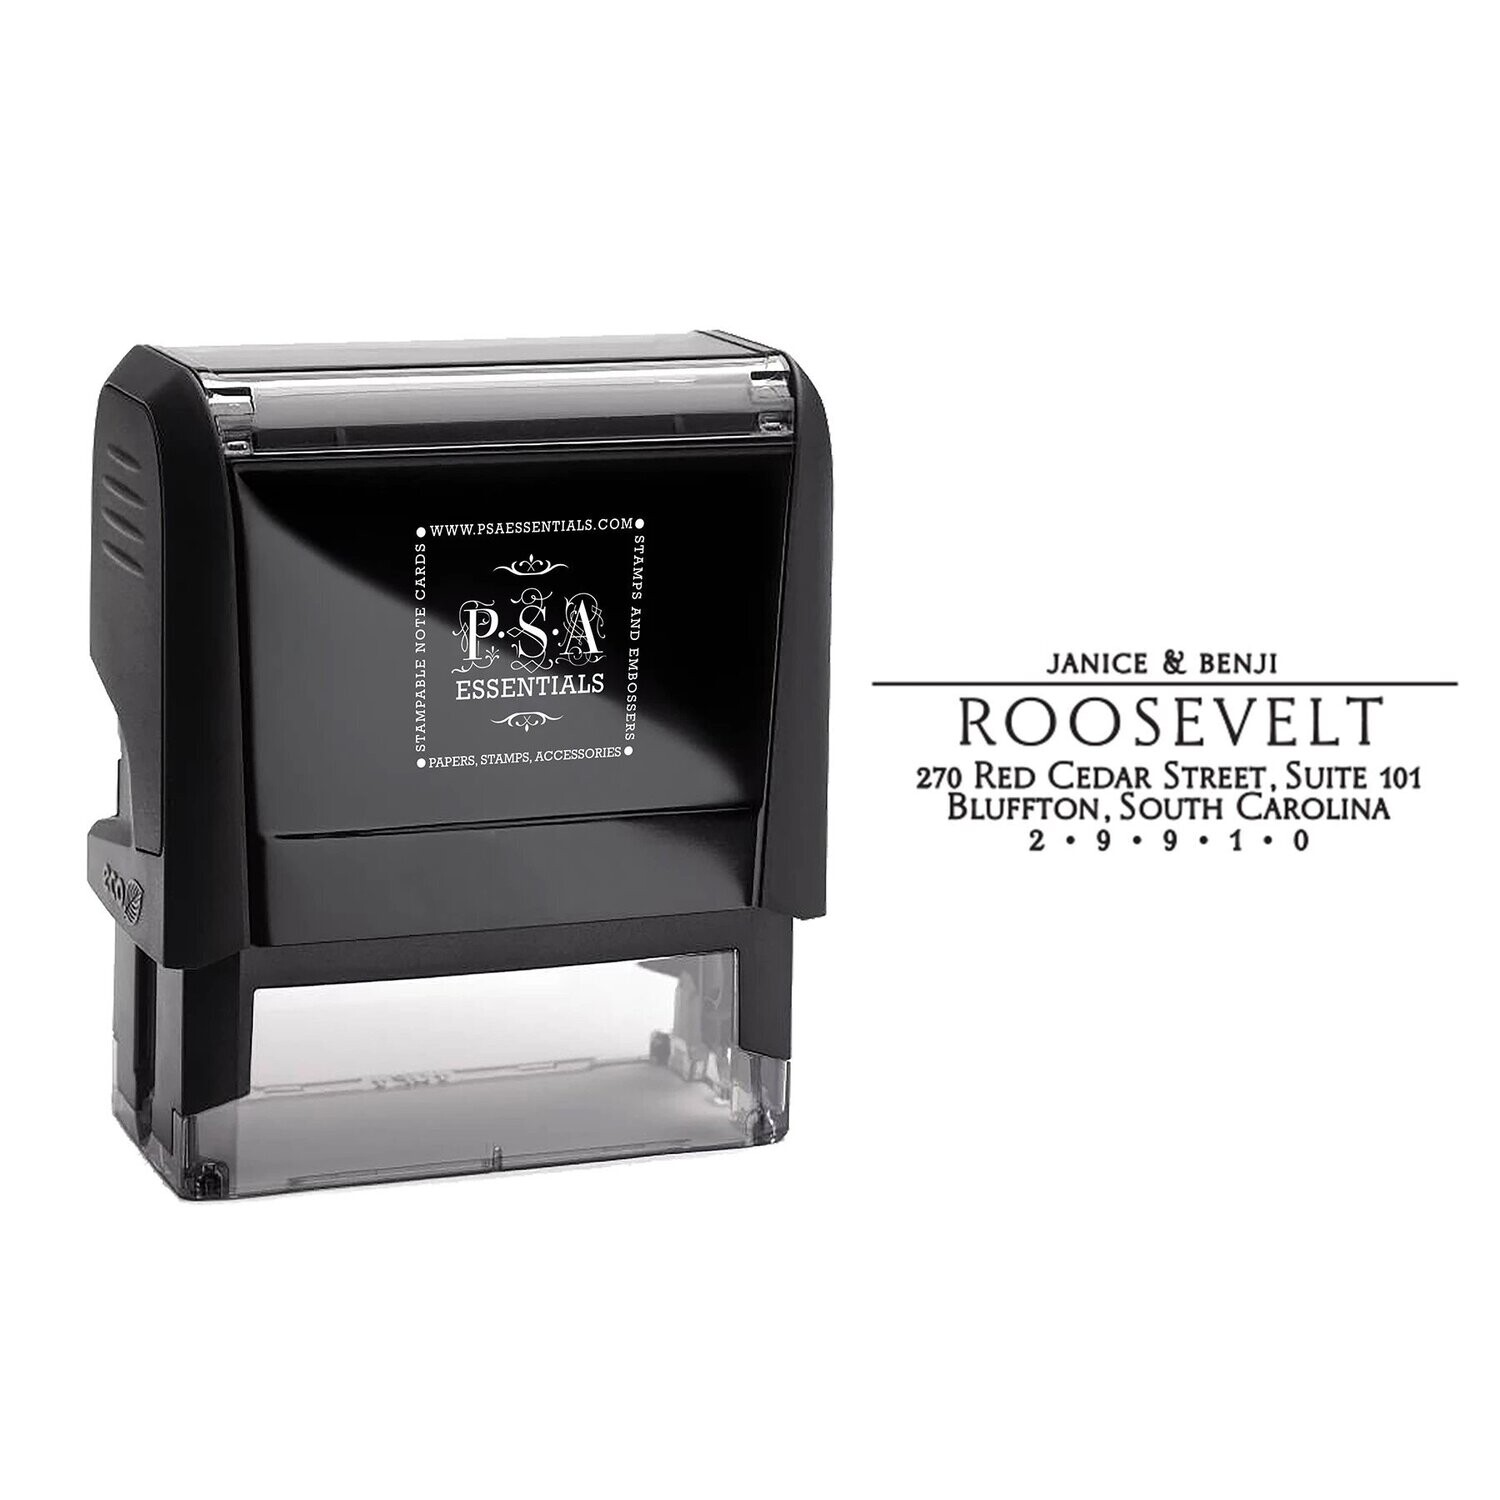 Roosevelt Return Address Stamp